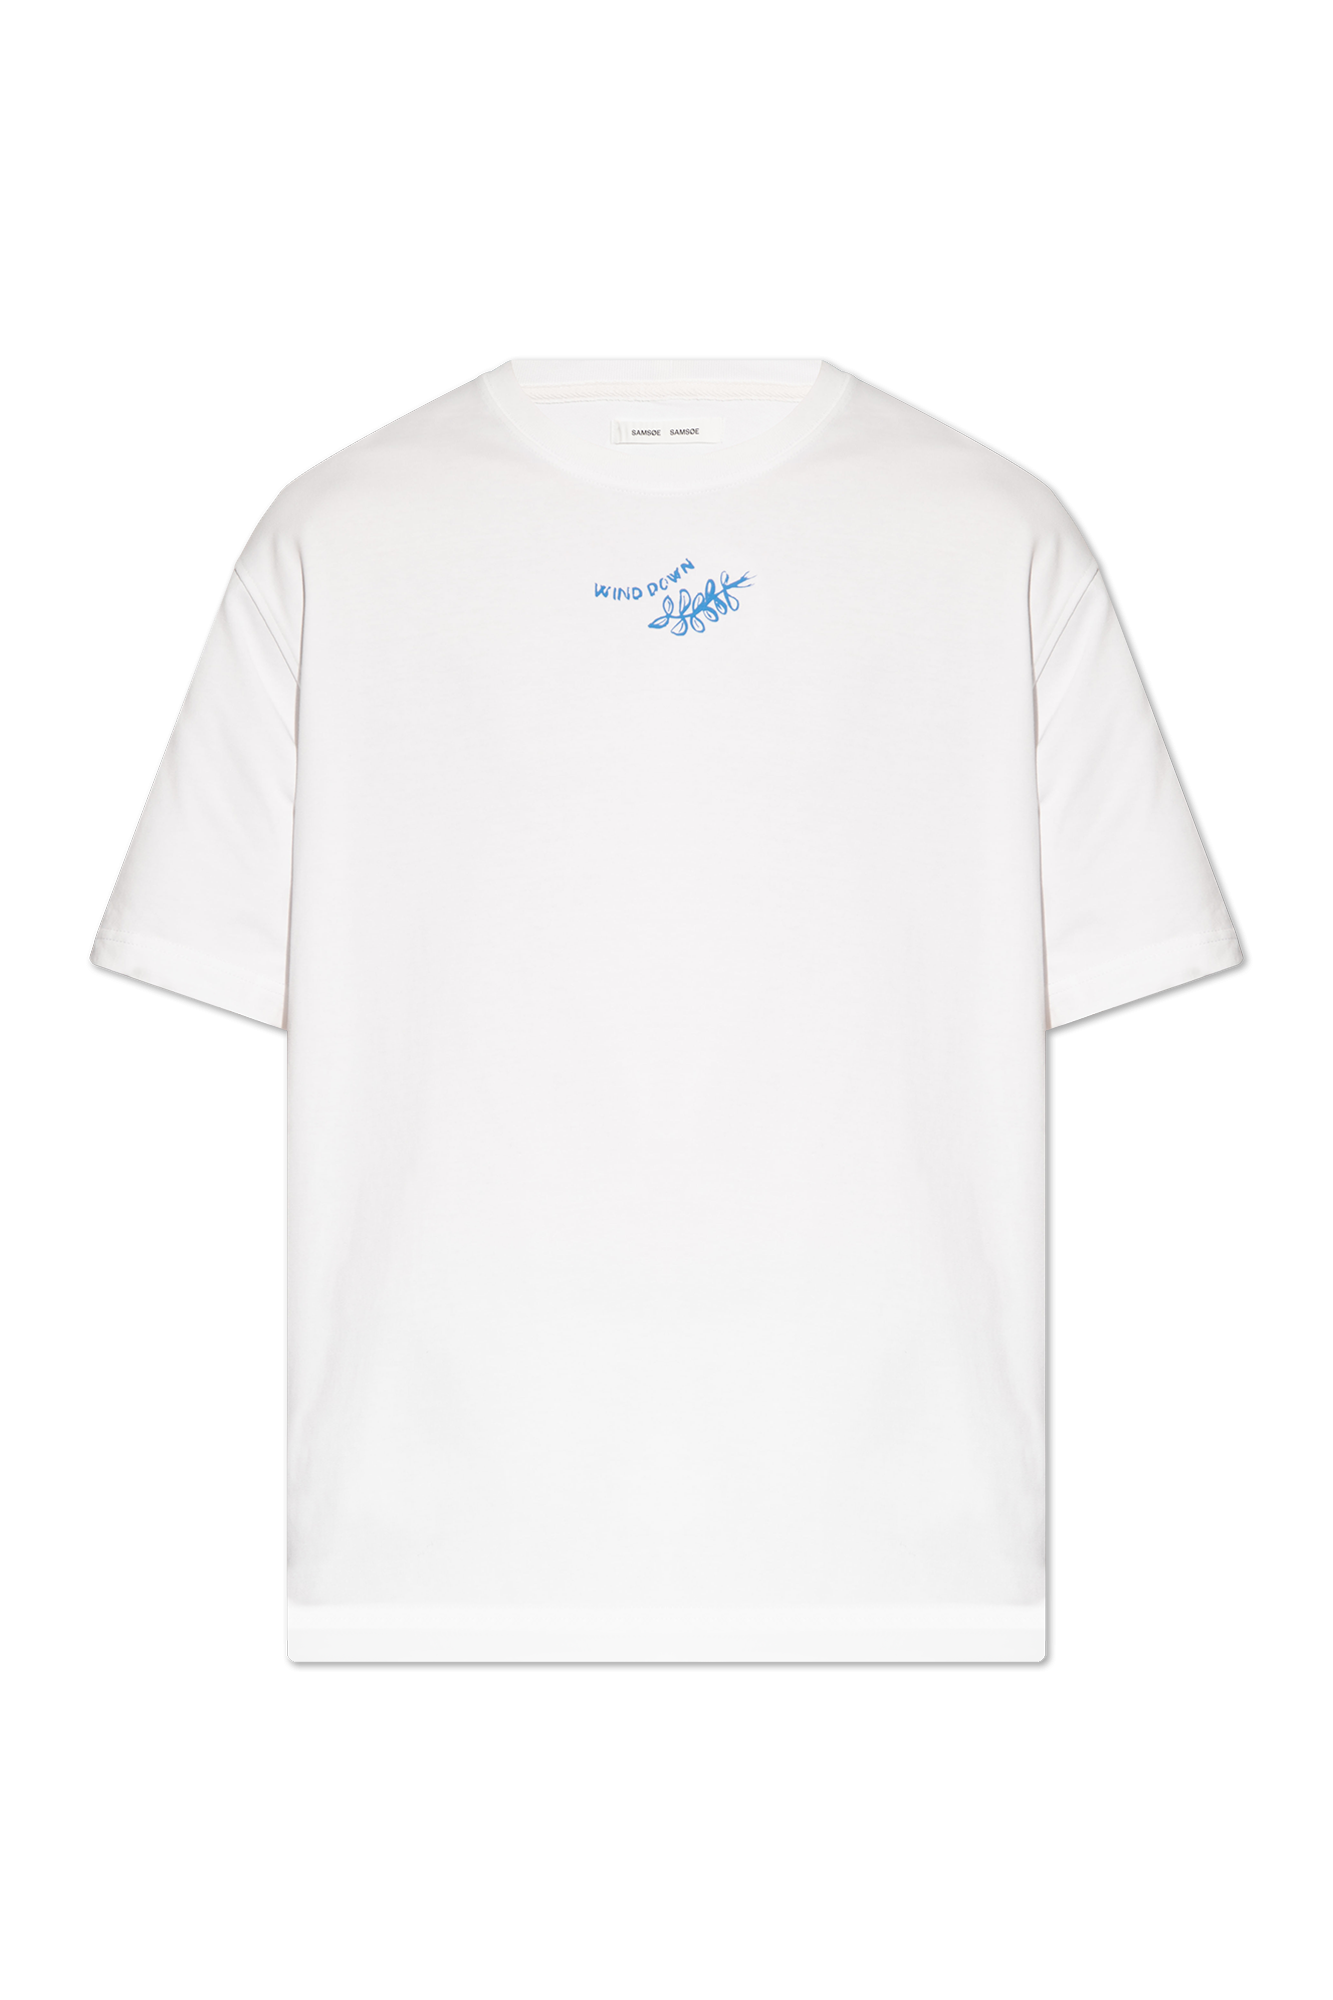 Samsøe Samsøe 'Sawind' printed T-shirt, Men's Clothing